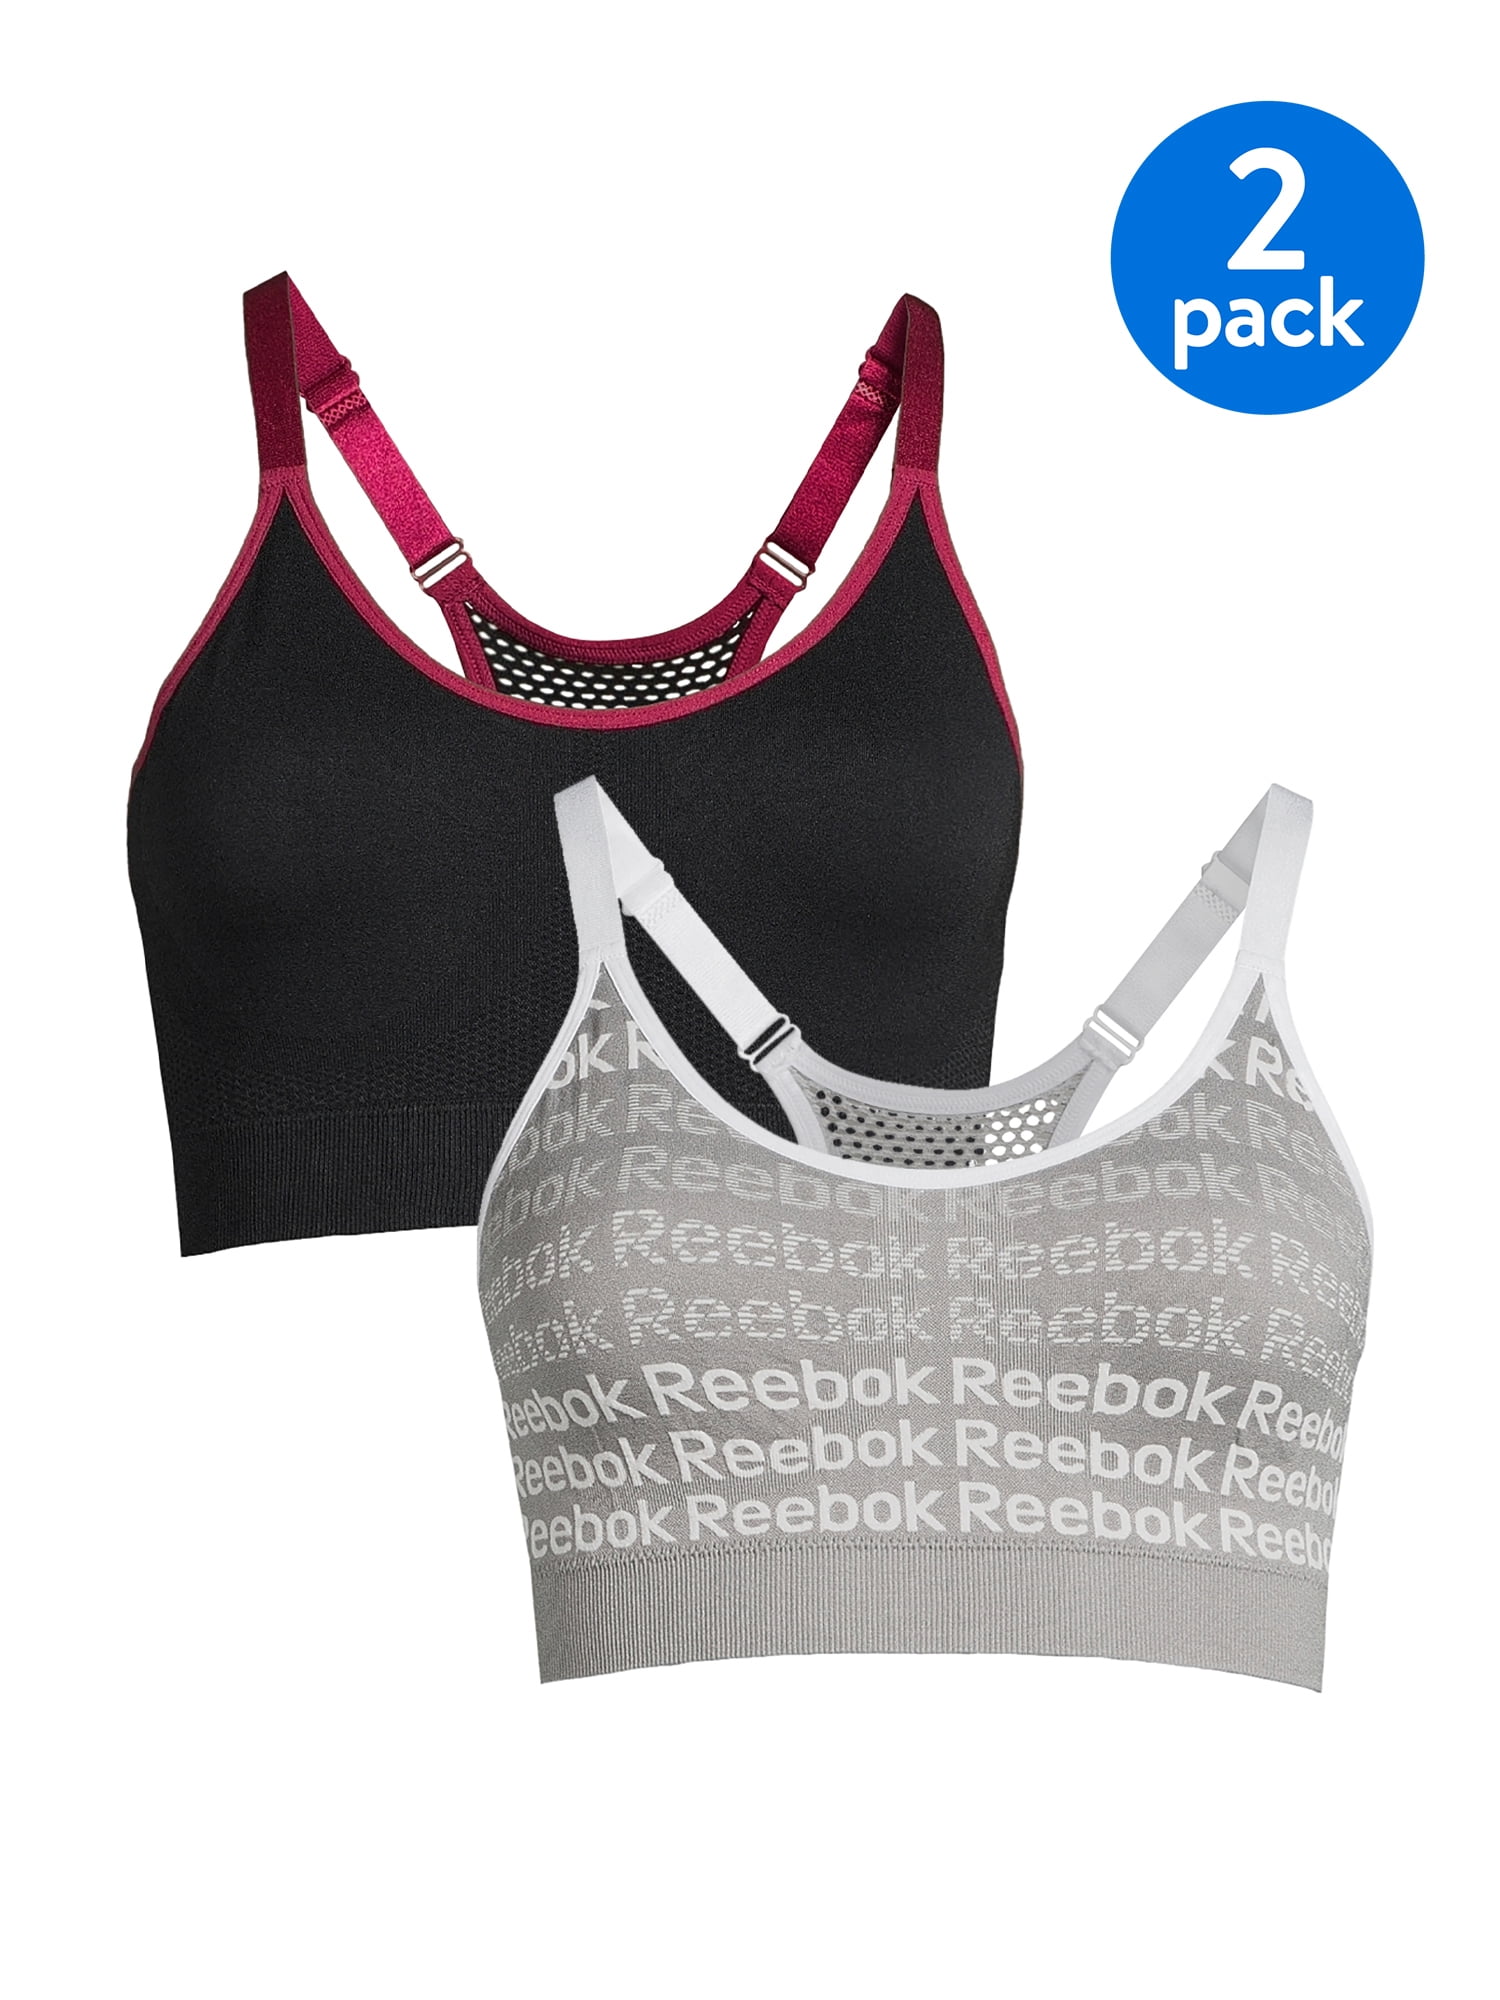 Reebok Women's Sports Bra, 2 Pack 